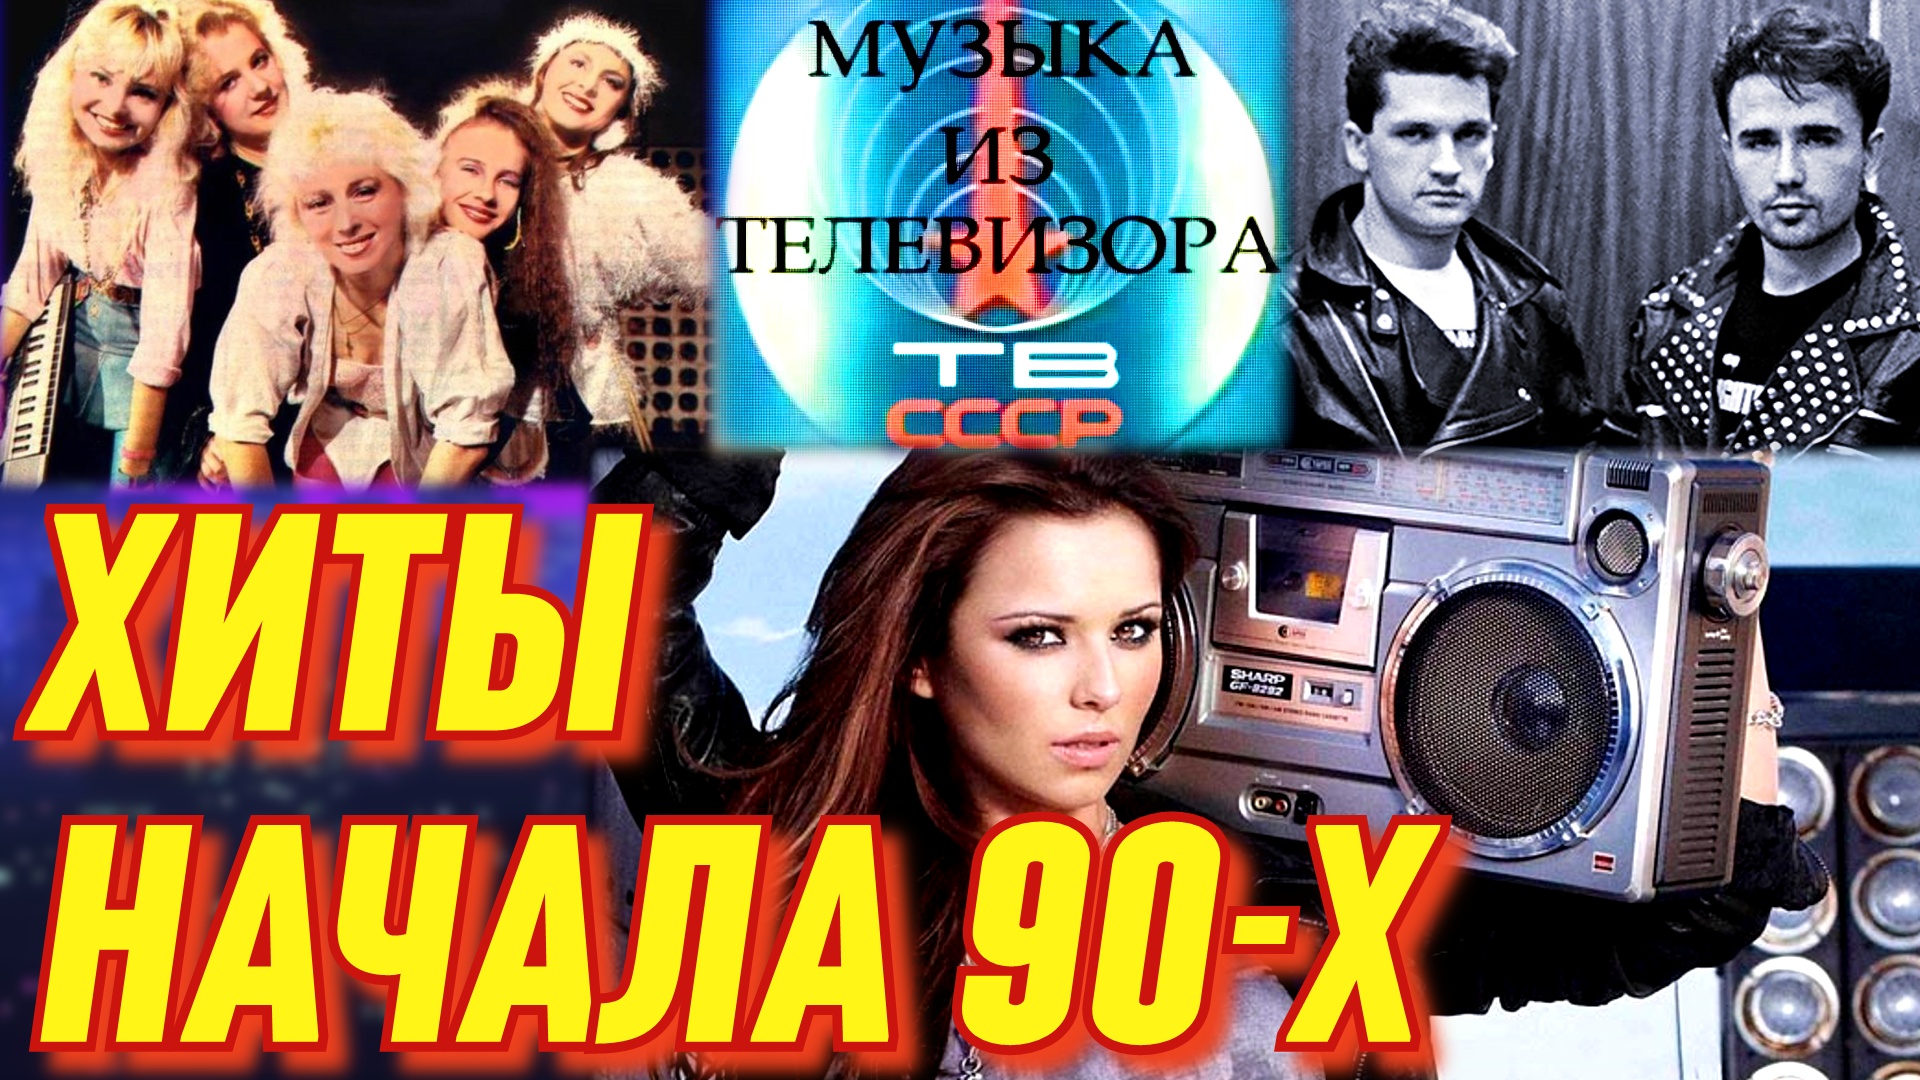 Песни 90 ремикс в современной обработке русские. Музыка-90-х. Муз каналы 90х. Девушки из 90-х.